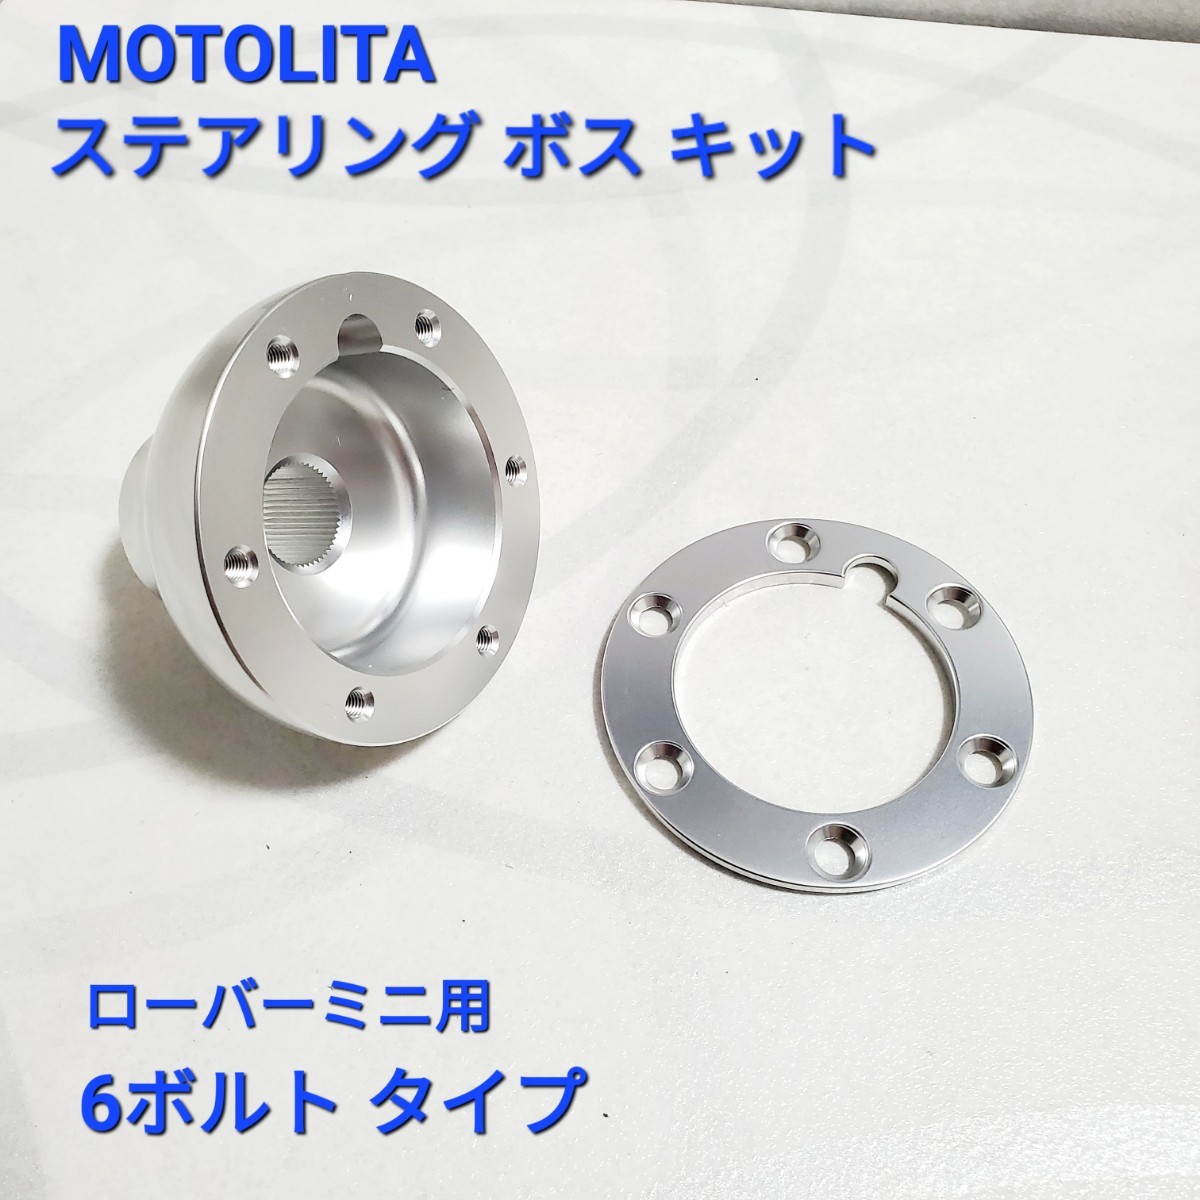 ローバーミニ ステアリングボス モトリタボス MOTOLITA ボス 6穴用 アロイ型 新品 の画像1